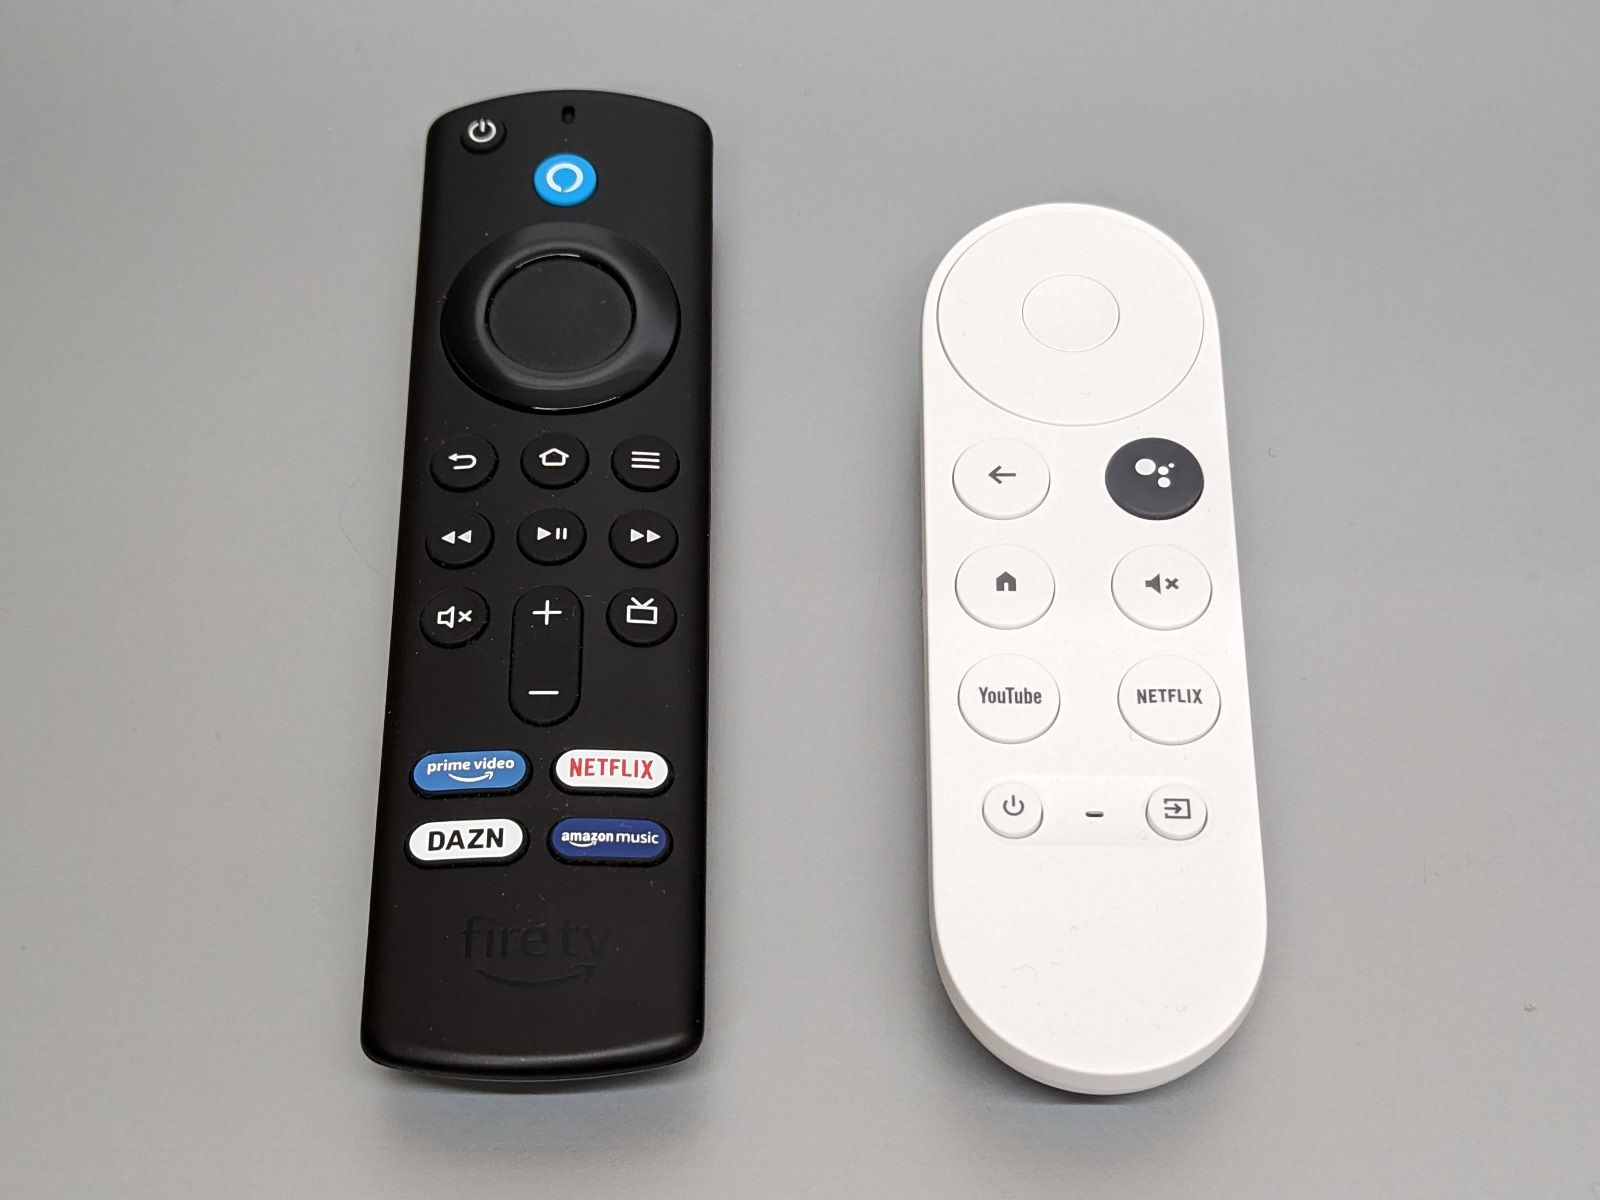 リモコンには対応サービスを直接呼び出すボタンが搭載されています。「Fire TV Stick」のリモコン（左）は4つ、「Chromecast with Google TV」のリモコン（右）は2つのボタンが見えます